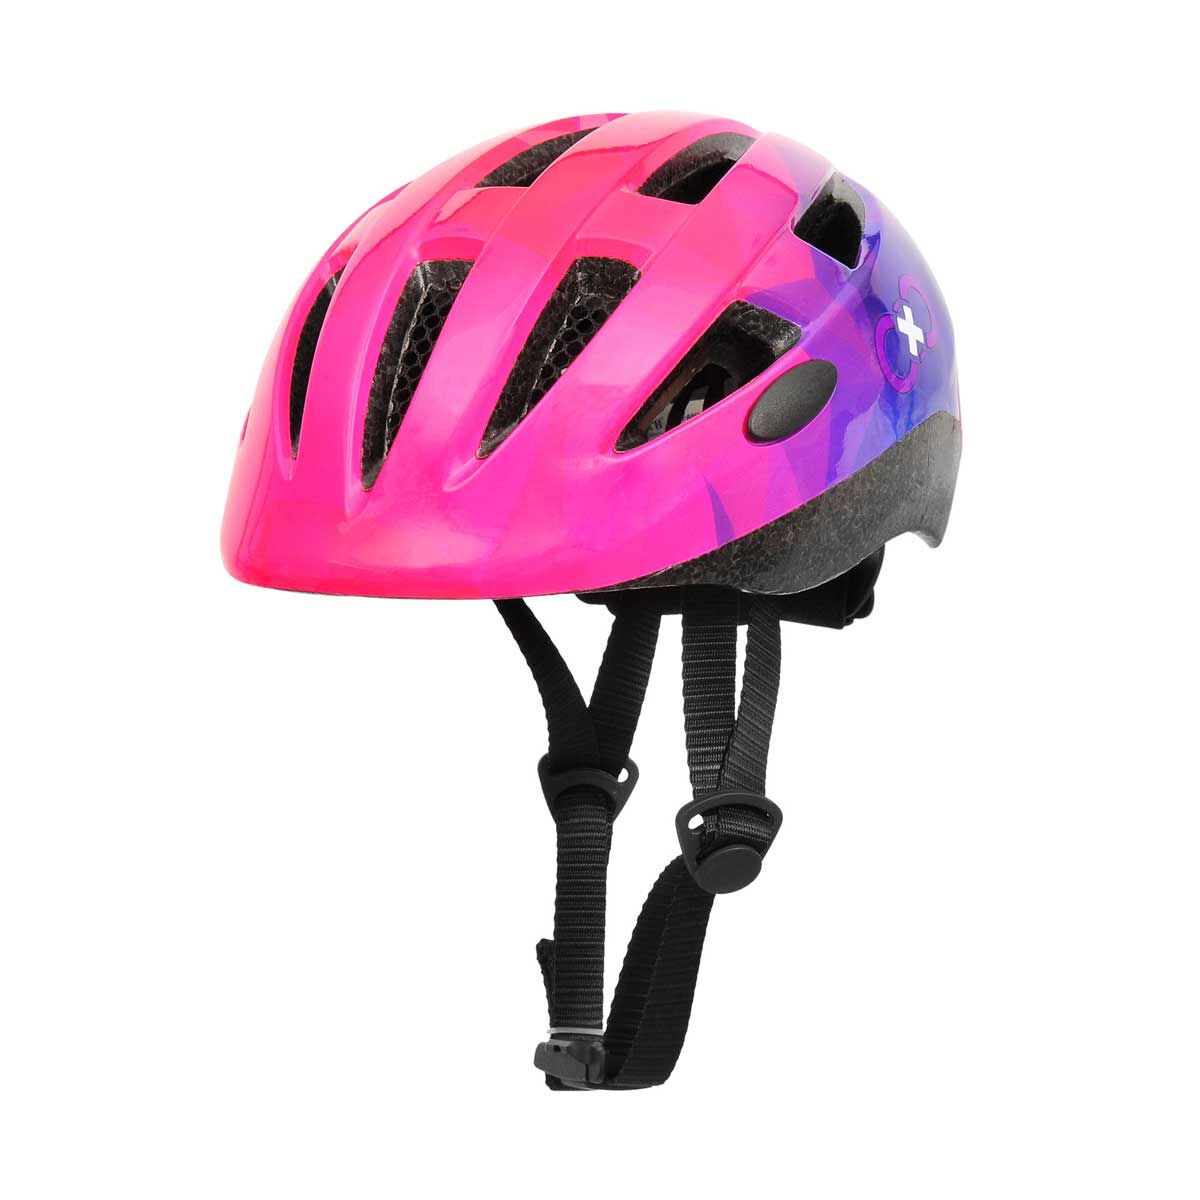 target mens bike helmet